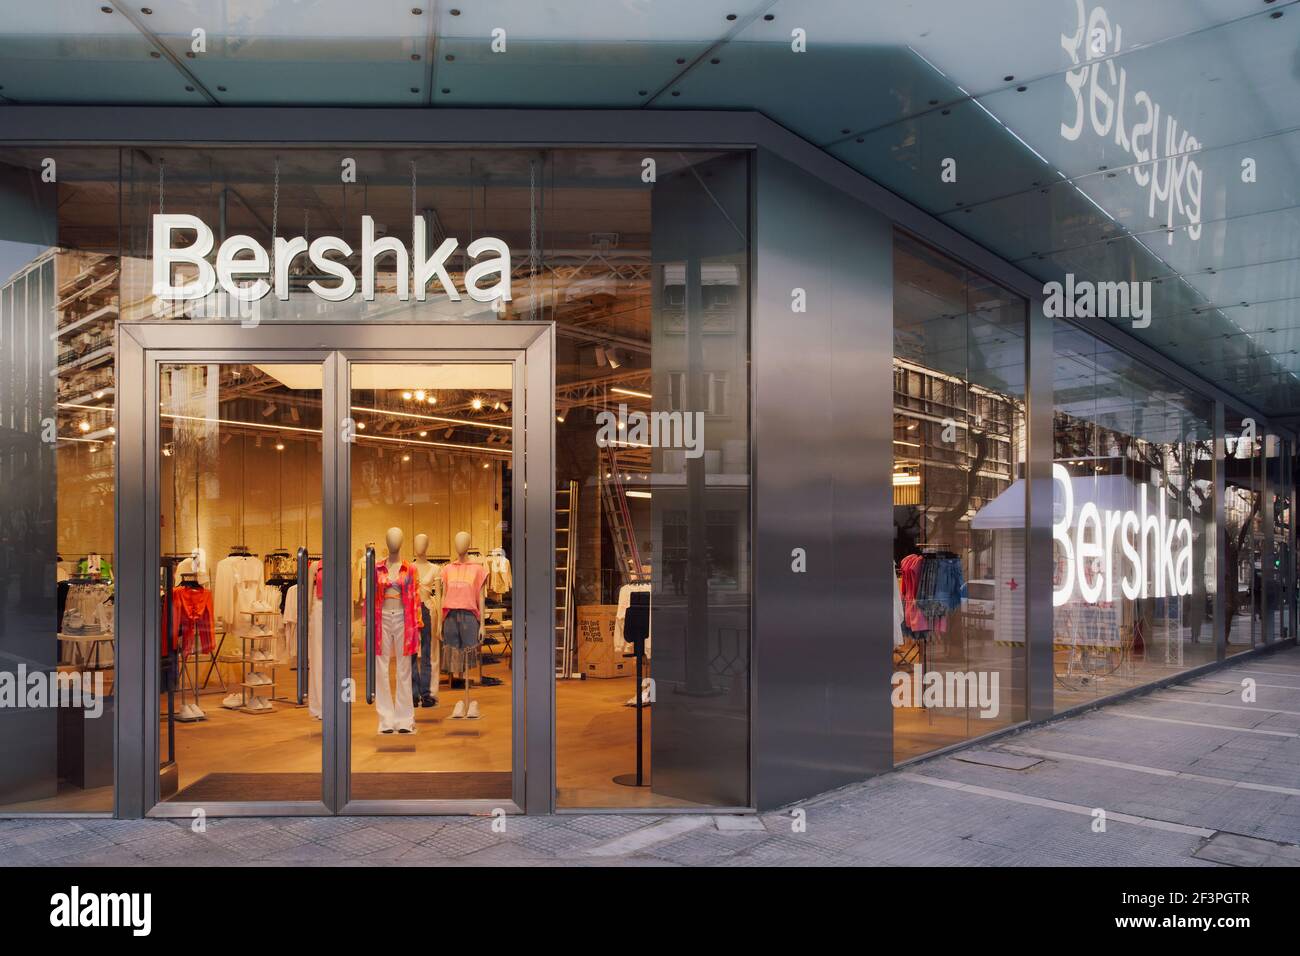 Extérieur de la boutique Bershka avec logo.marque espagnole de vêtements et  d'accessoires par Inditex, commerce mondial de vêtements à Thessalonique  Grèce Photo Stock - Alamy